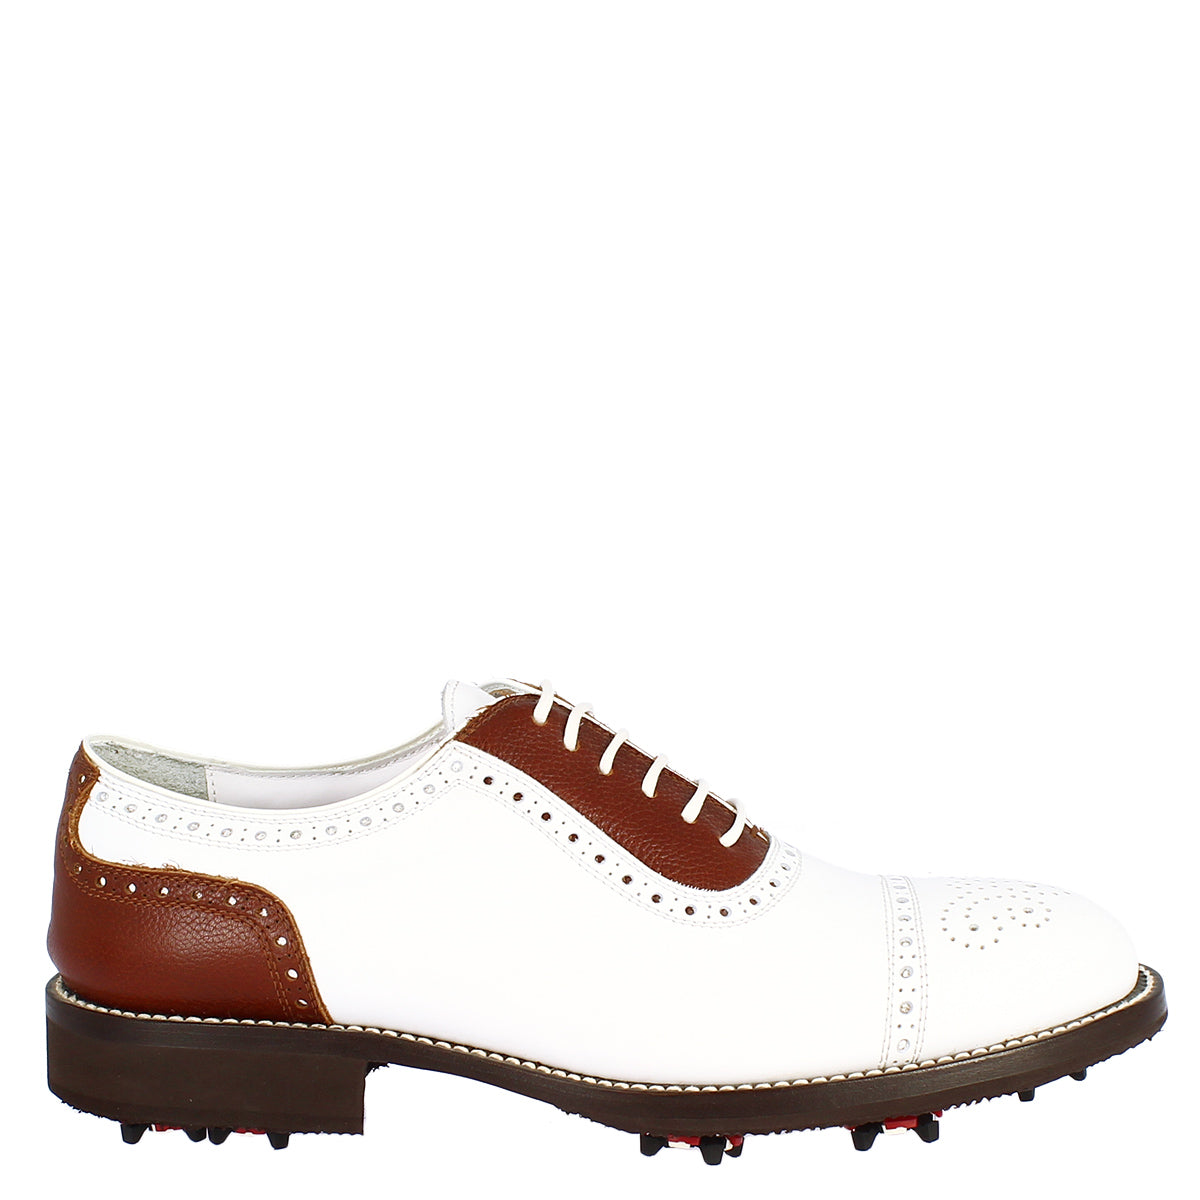 Scarpe da golf donna classiche artigianali in pelle bianca marrone